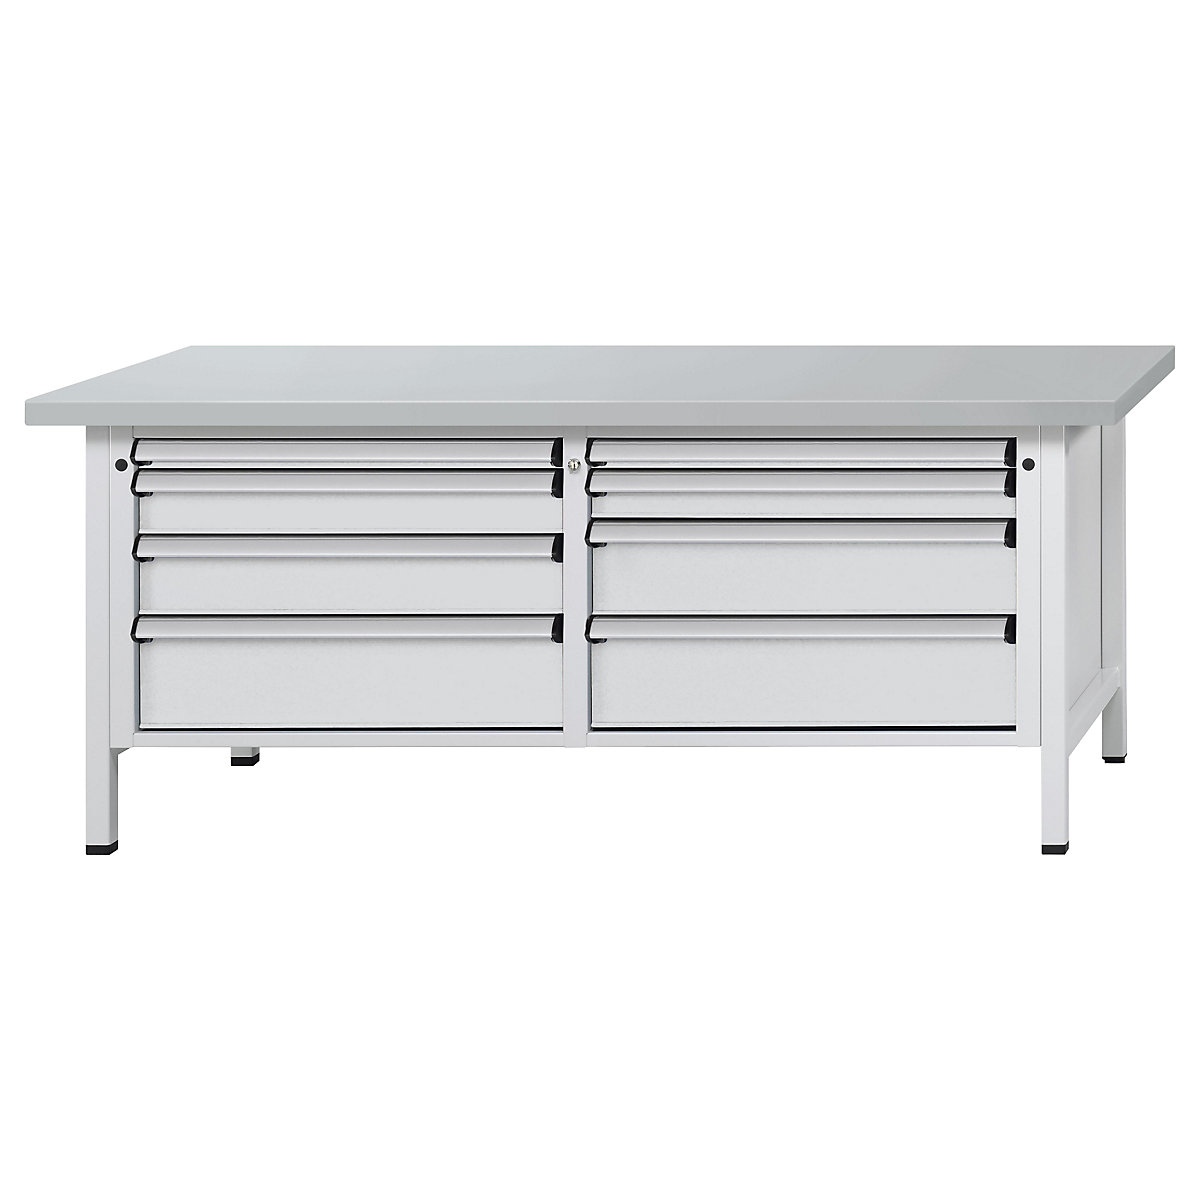 Établi avec tiroirs XL/XXL, sur piétement – ANKE, largeur 2000 mm, 8 tiroirs, plateau à revêtement en tôle d'acier, façade gris clair-10